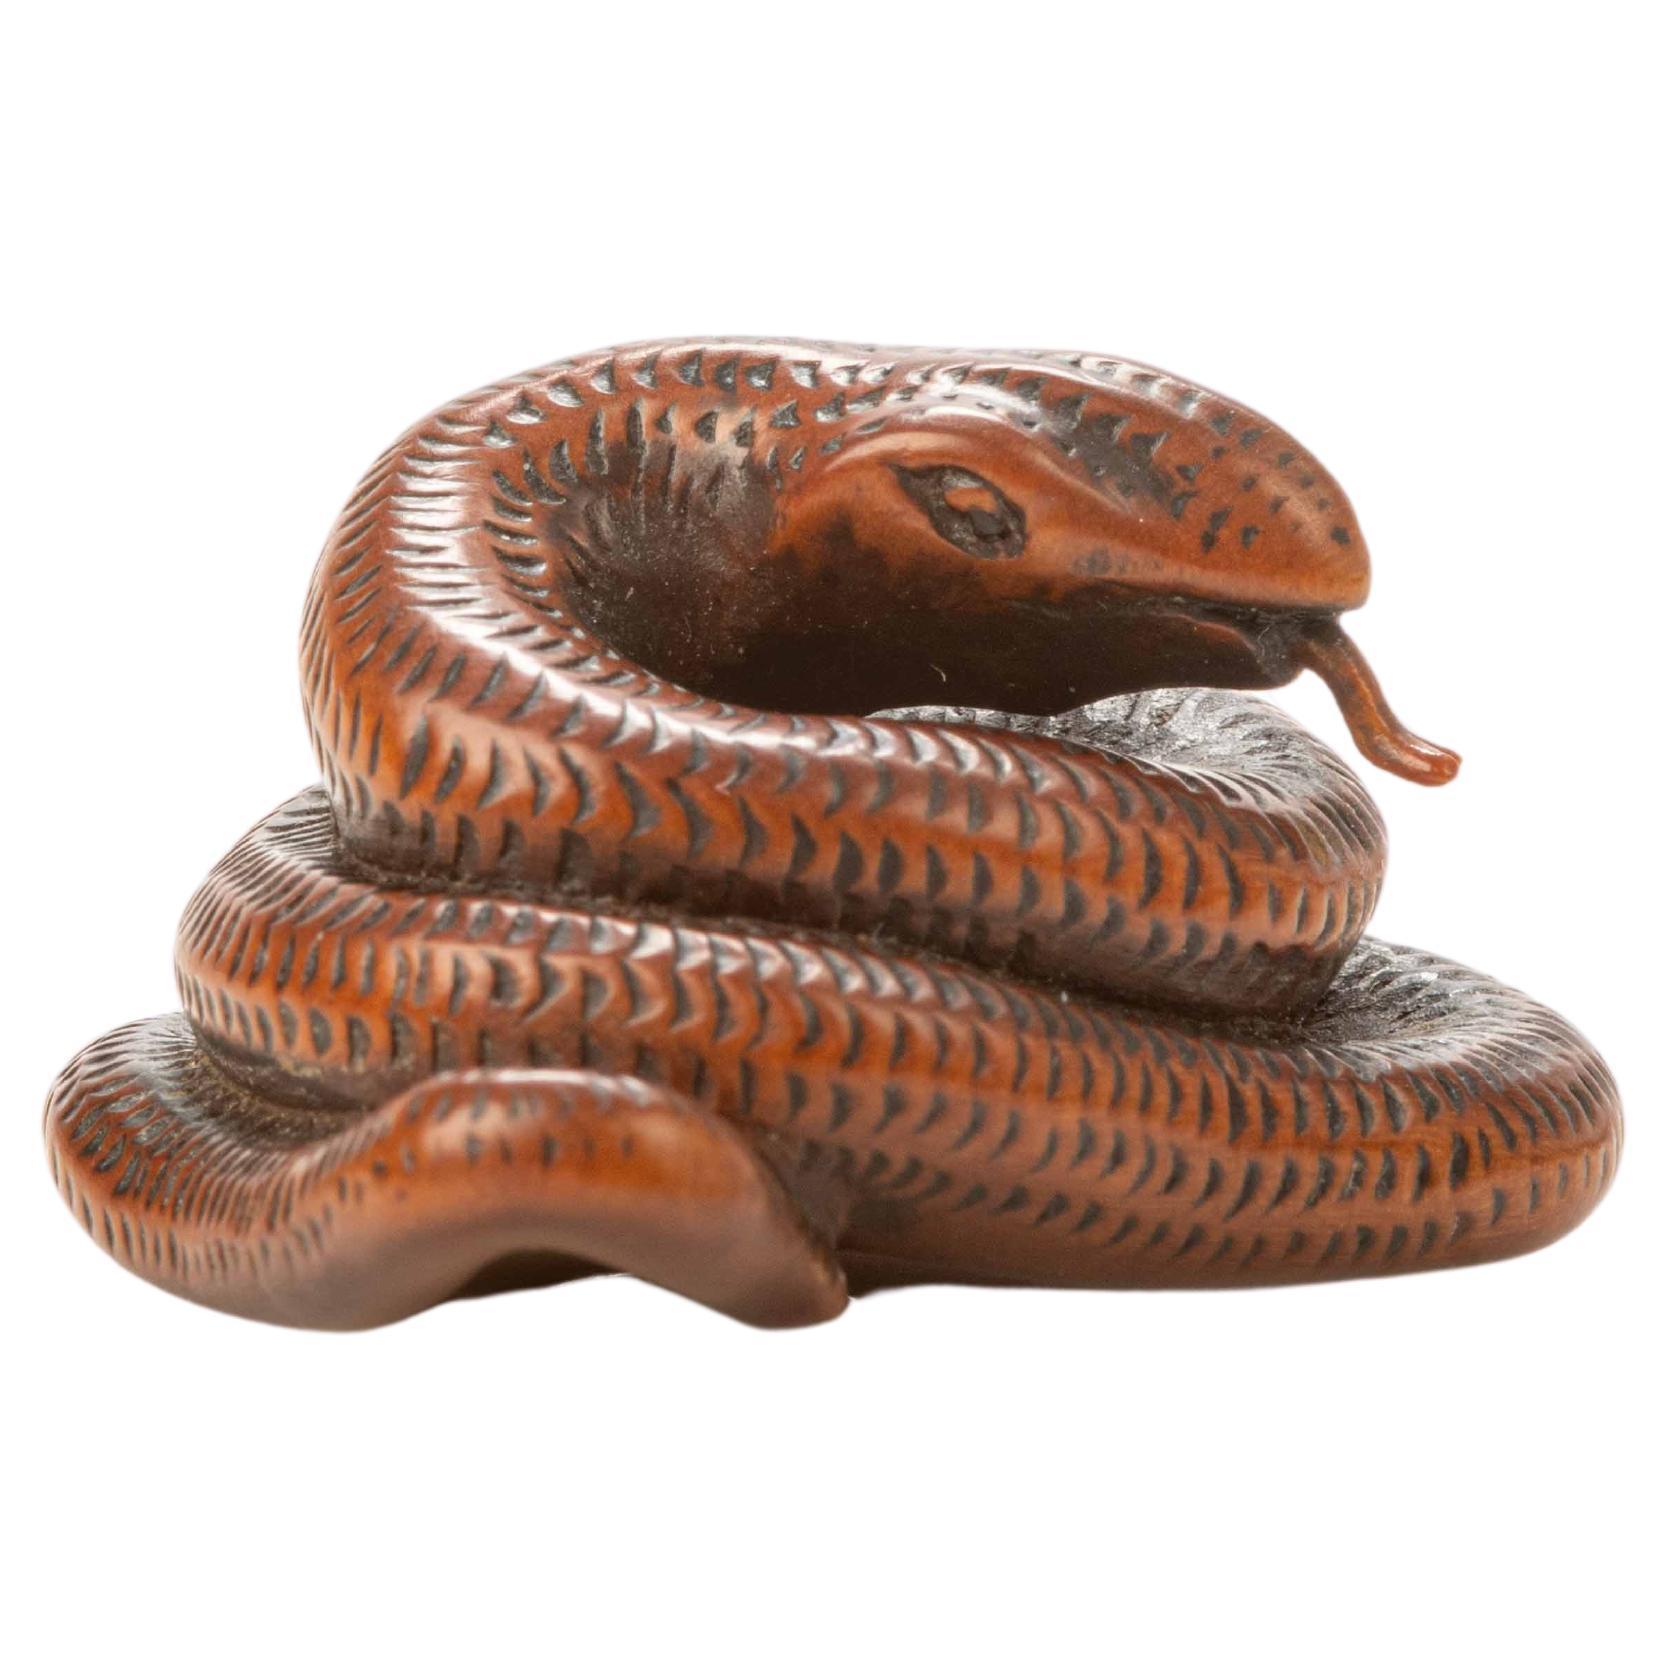 Ein Buchsbaum-Netsuke, das eine Schlange darstellt